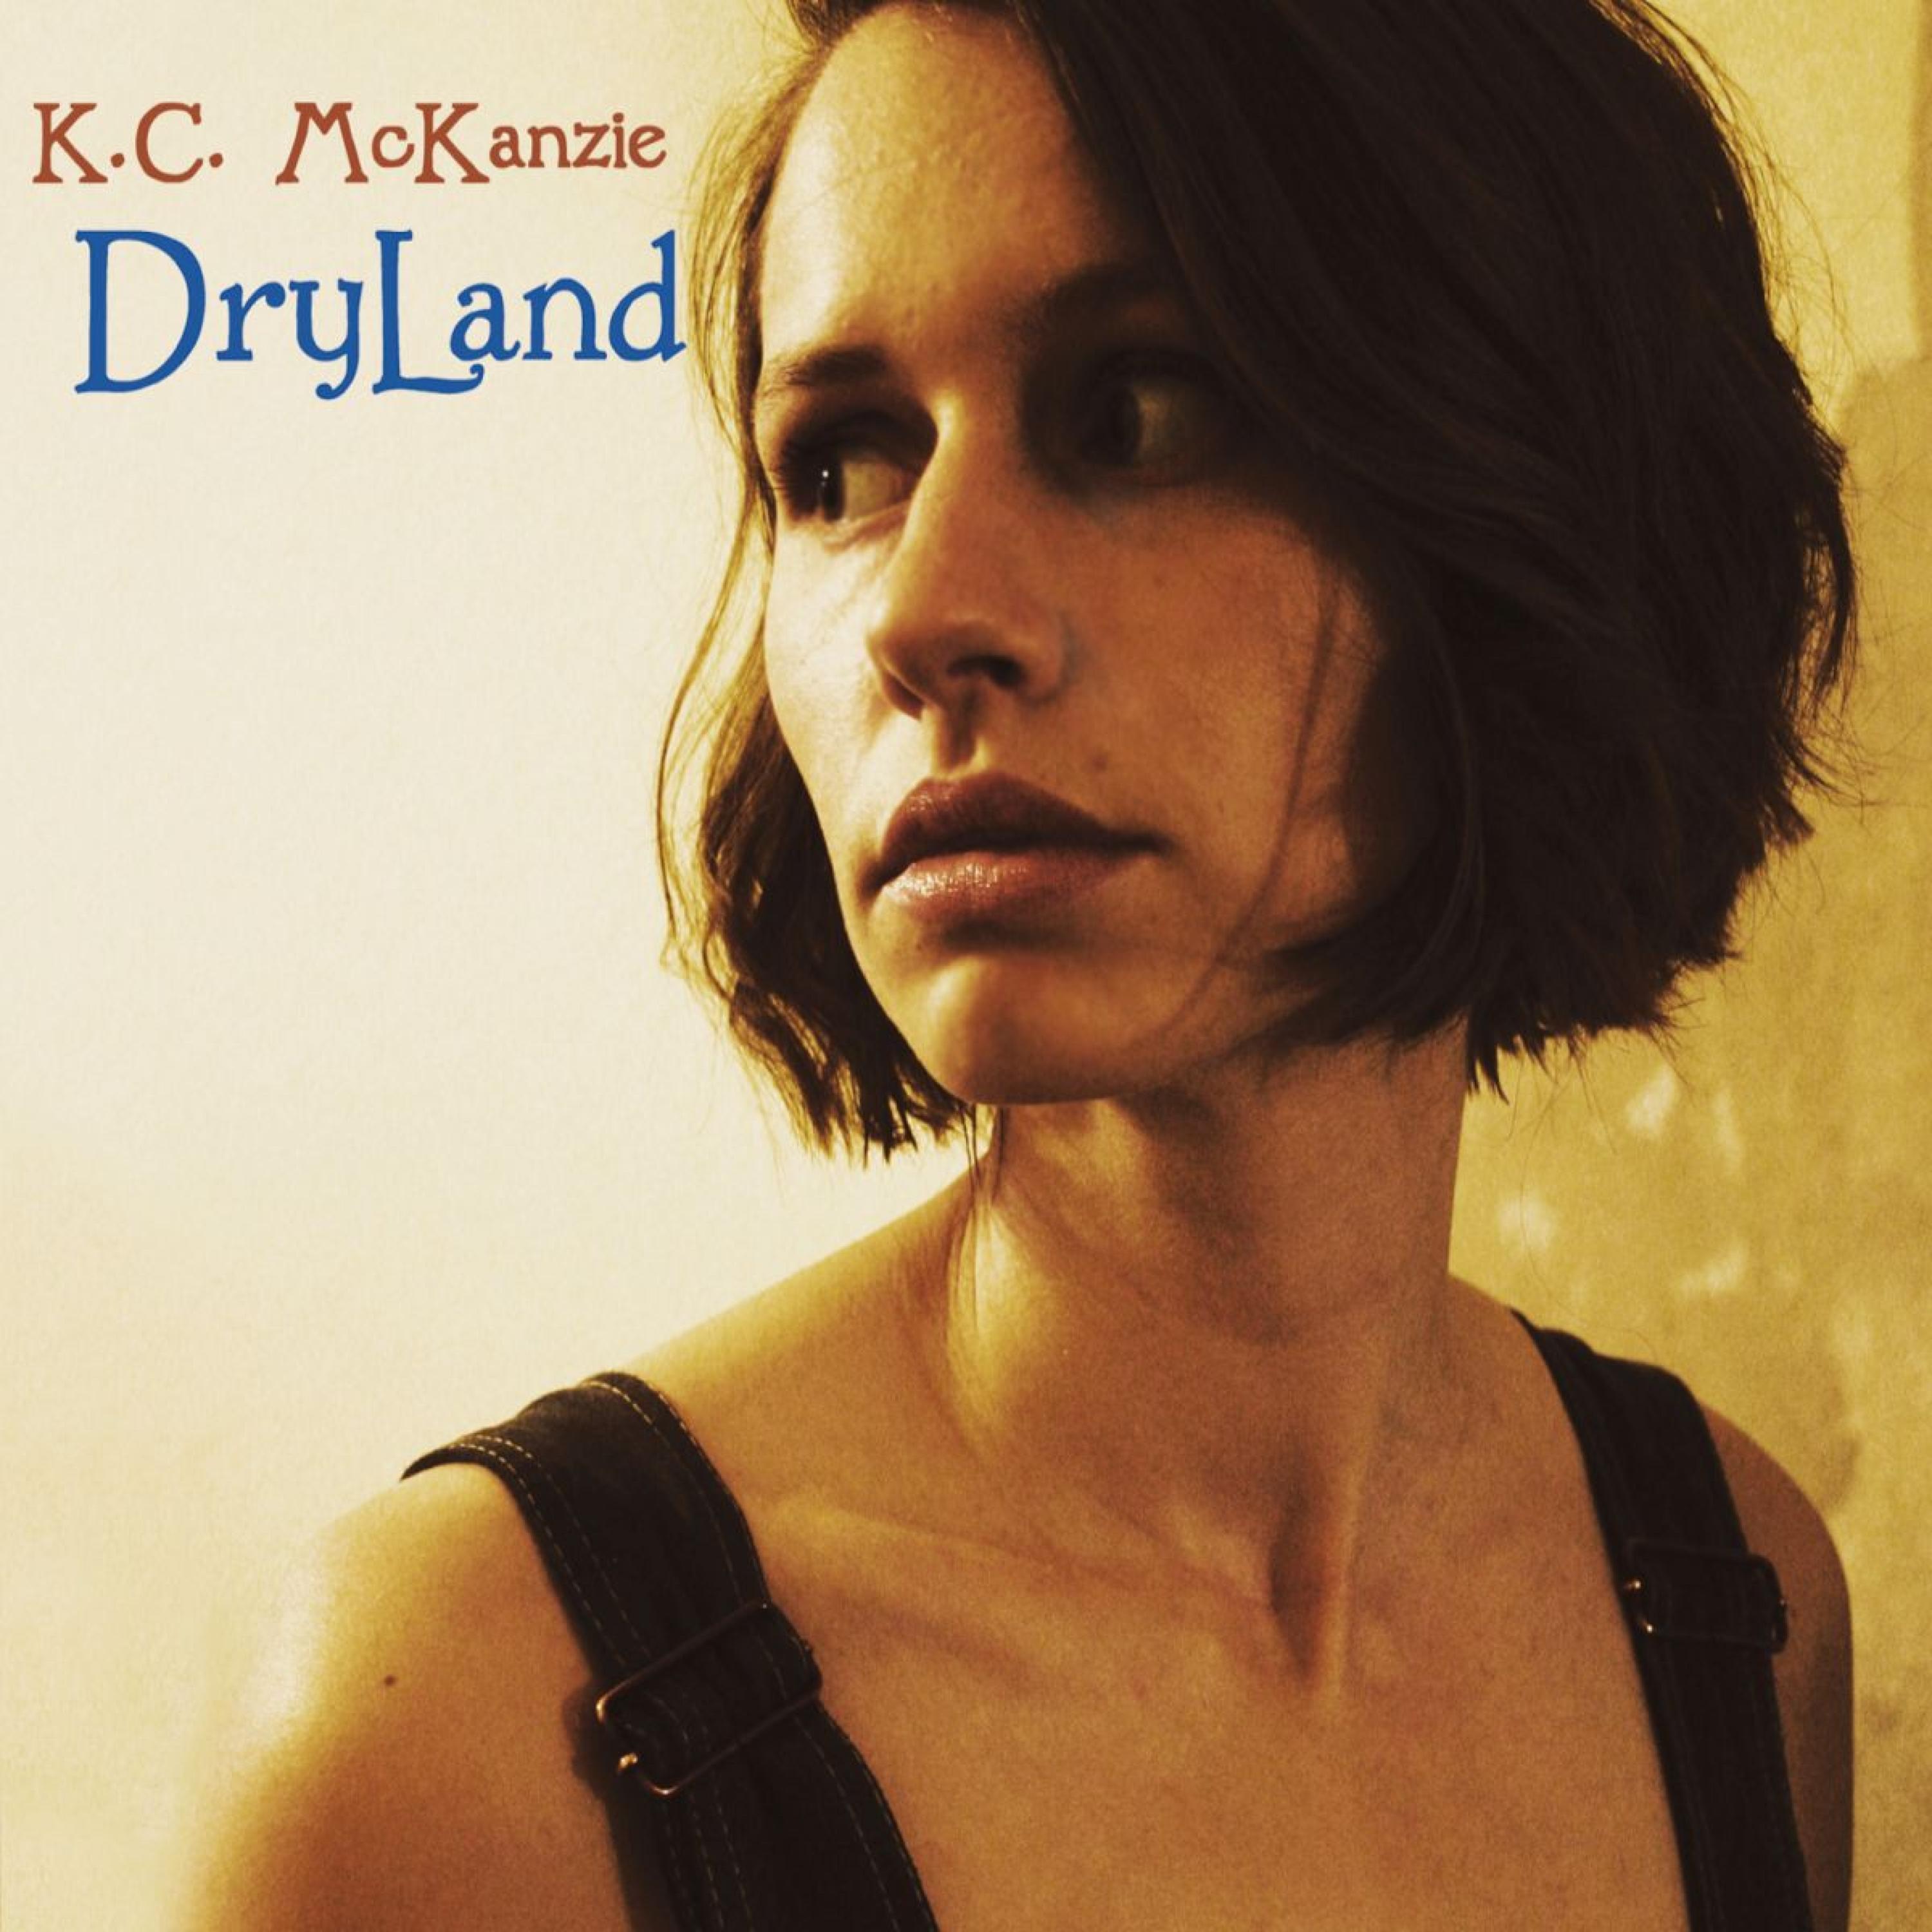 K.C. McKanzie - Dryland